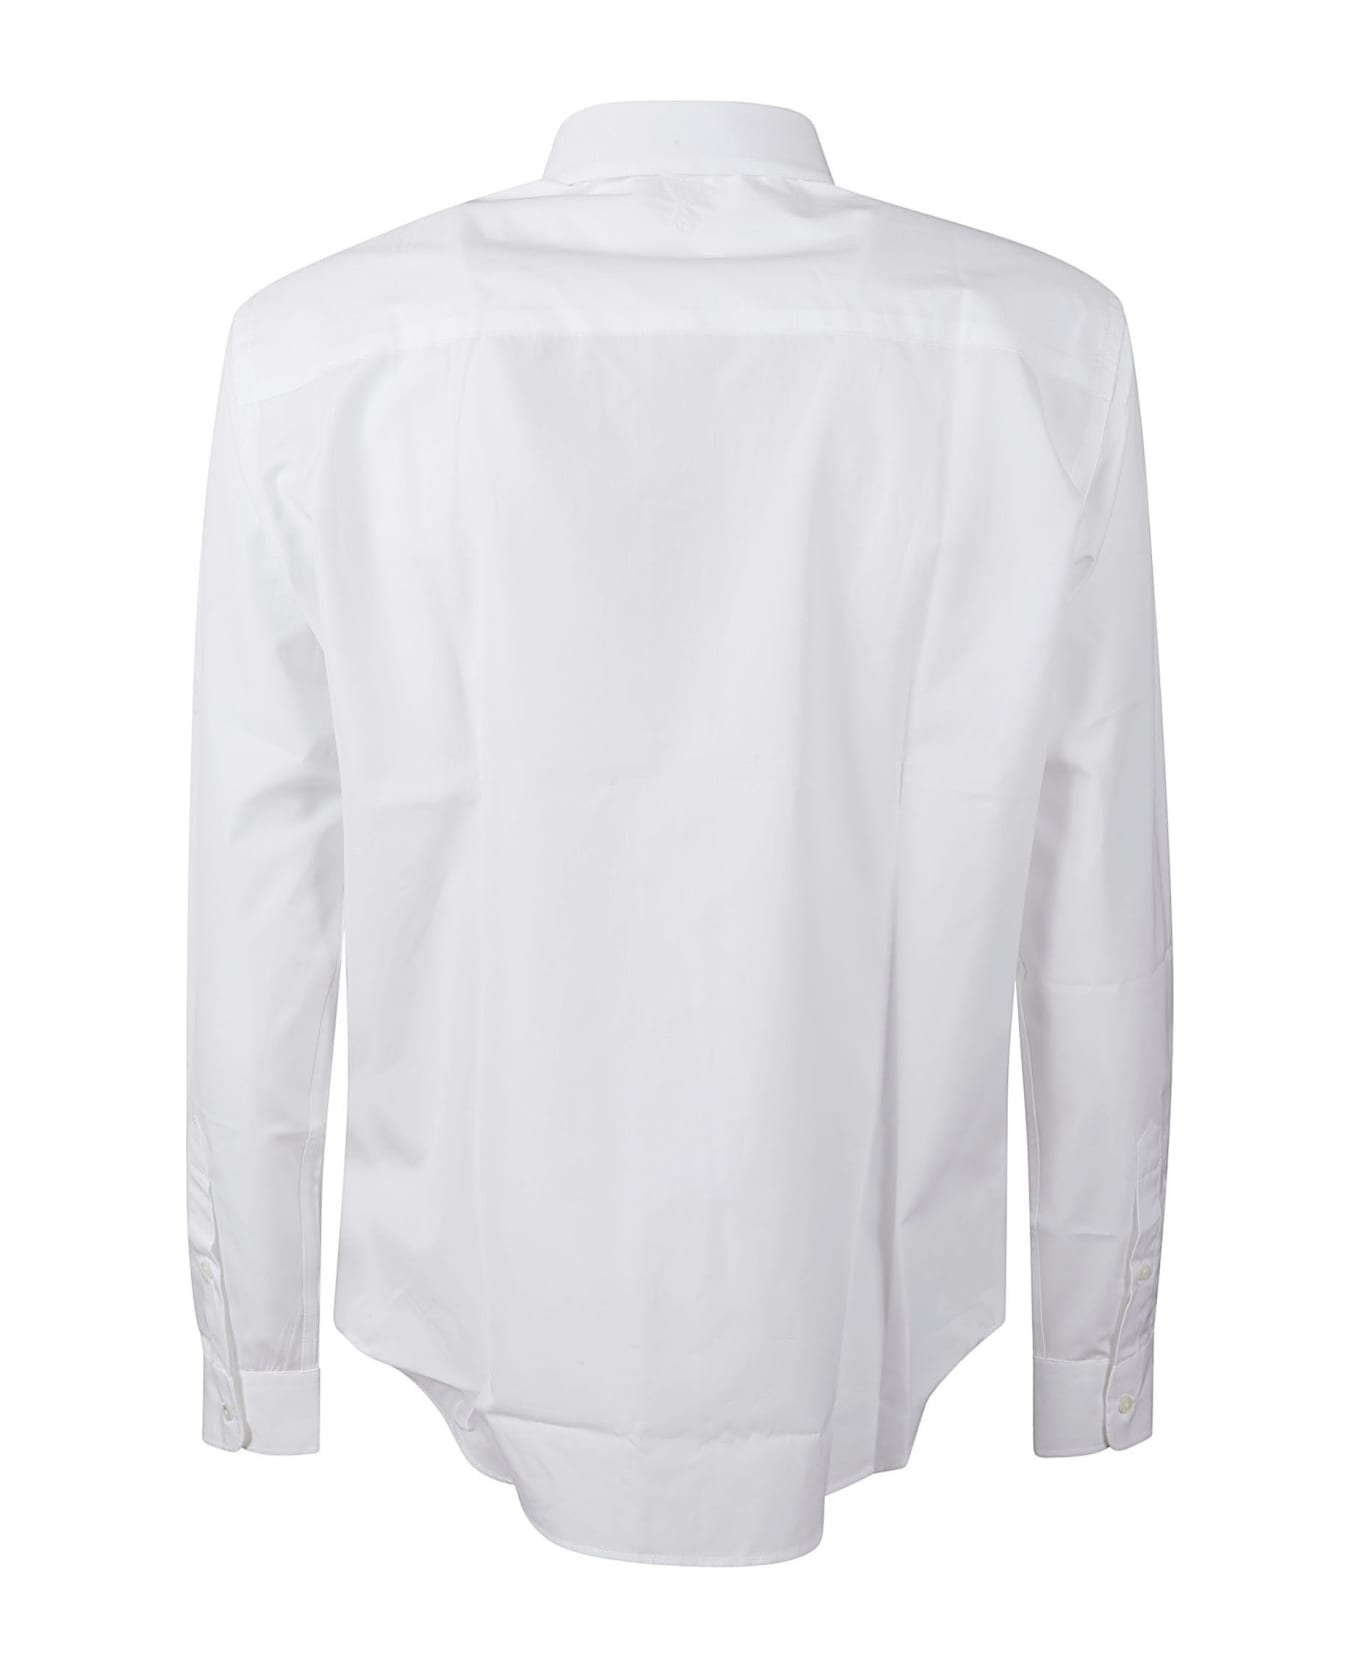 Ami Alexandre Mattiussi Round Hem Plain Shirt - White